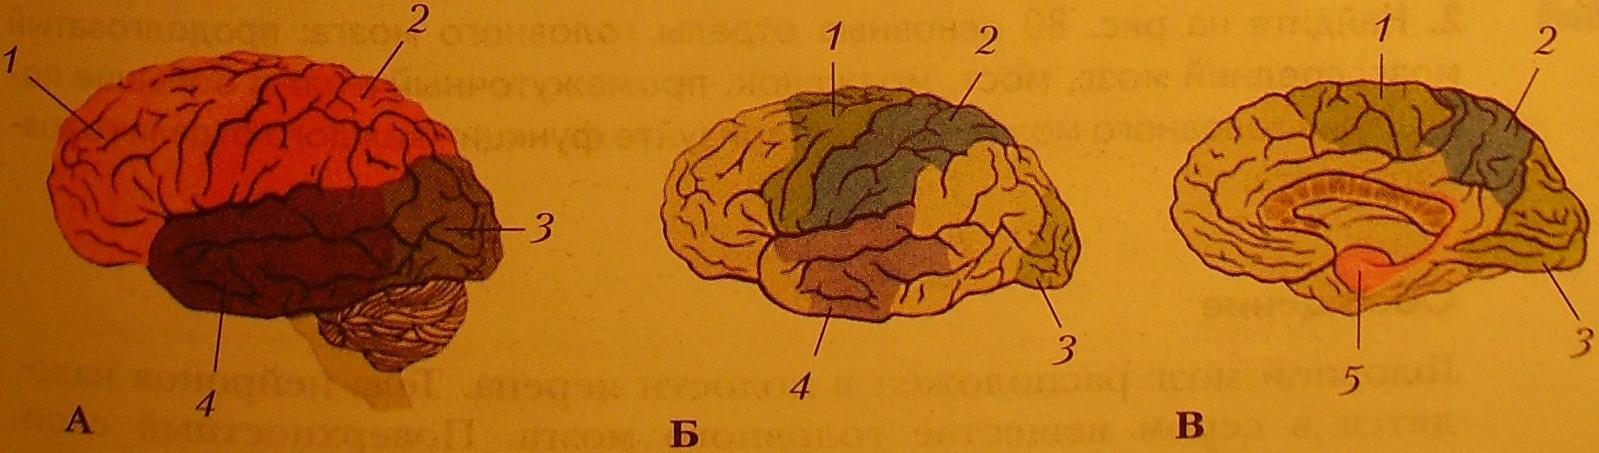 Кожно мышечная зона головного мозга. Вегетативные центра в коре больших полушарий. Палеокортекс архикортекс неокортекс.